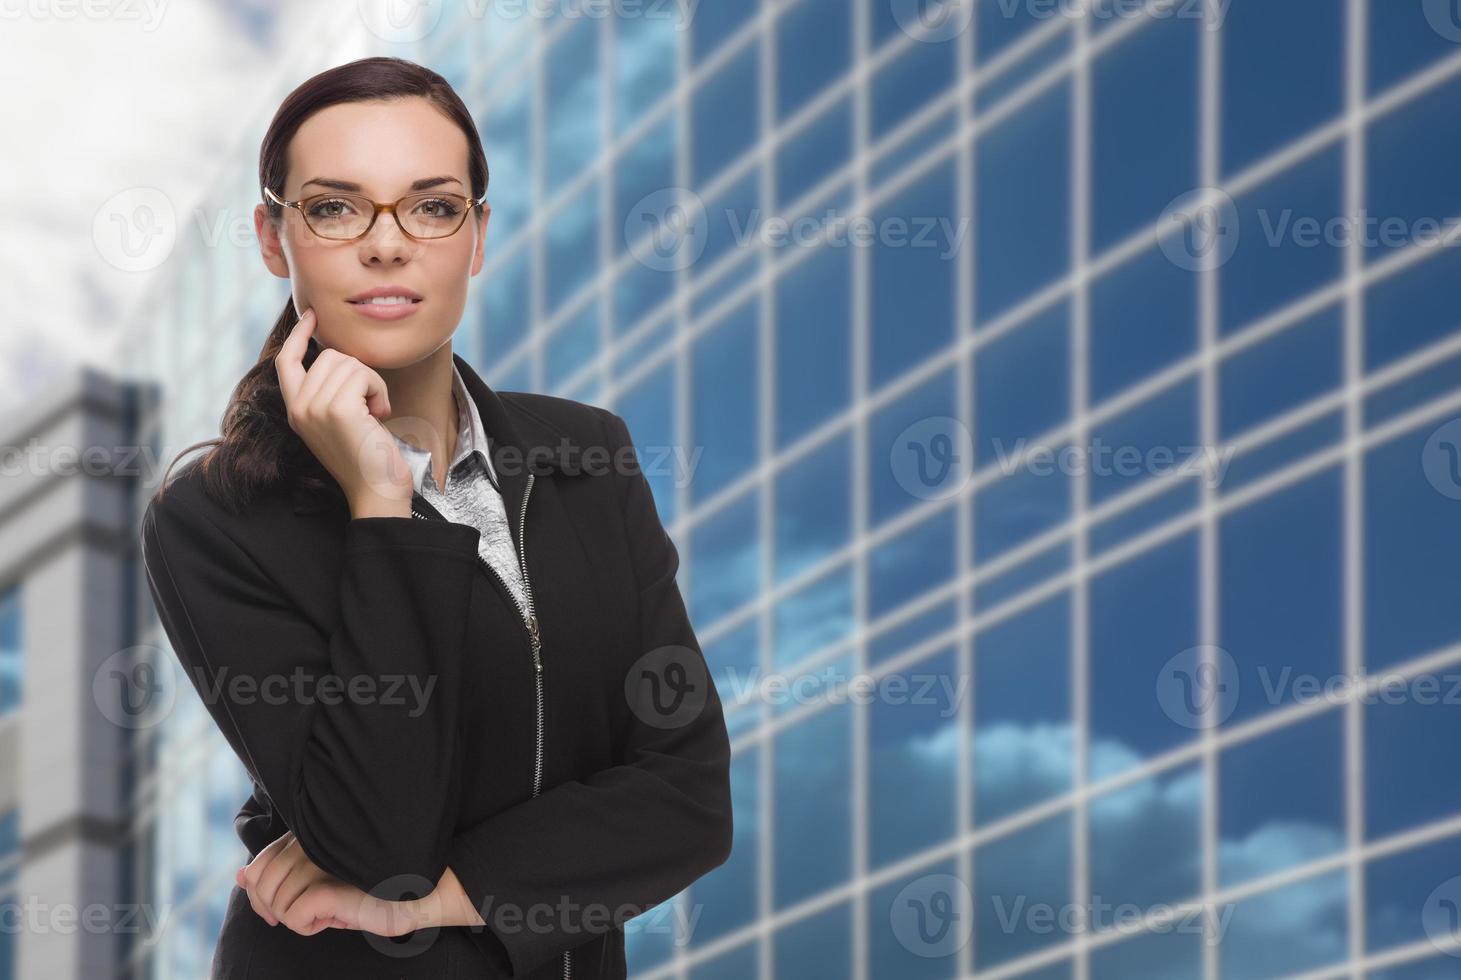 mulher atraente e confiante de raça mista em frente ao prédio corporativo foto